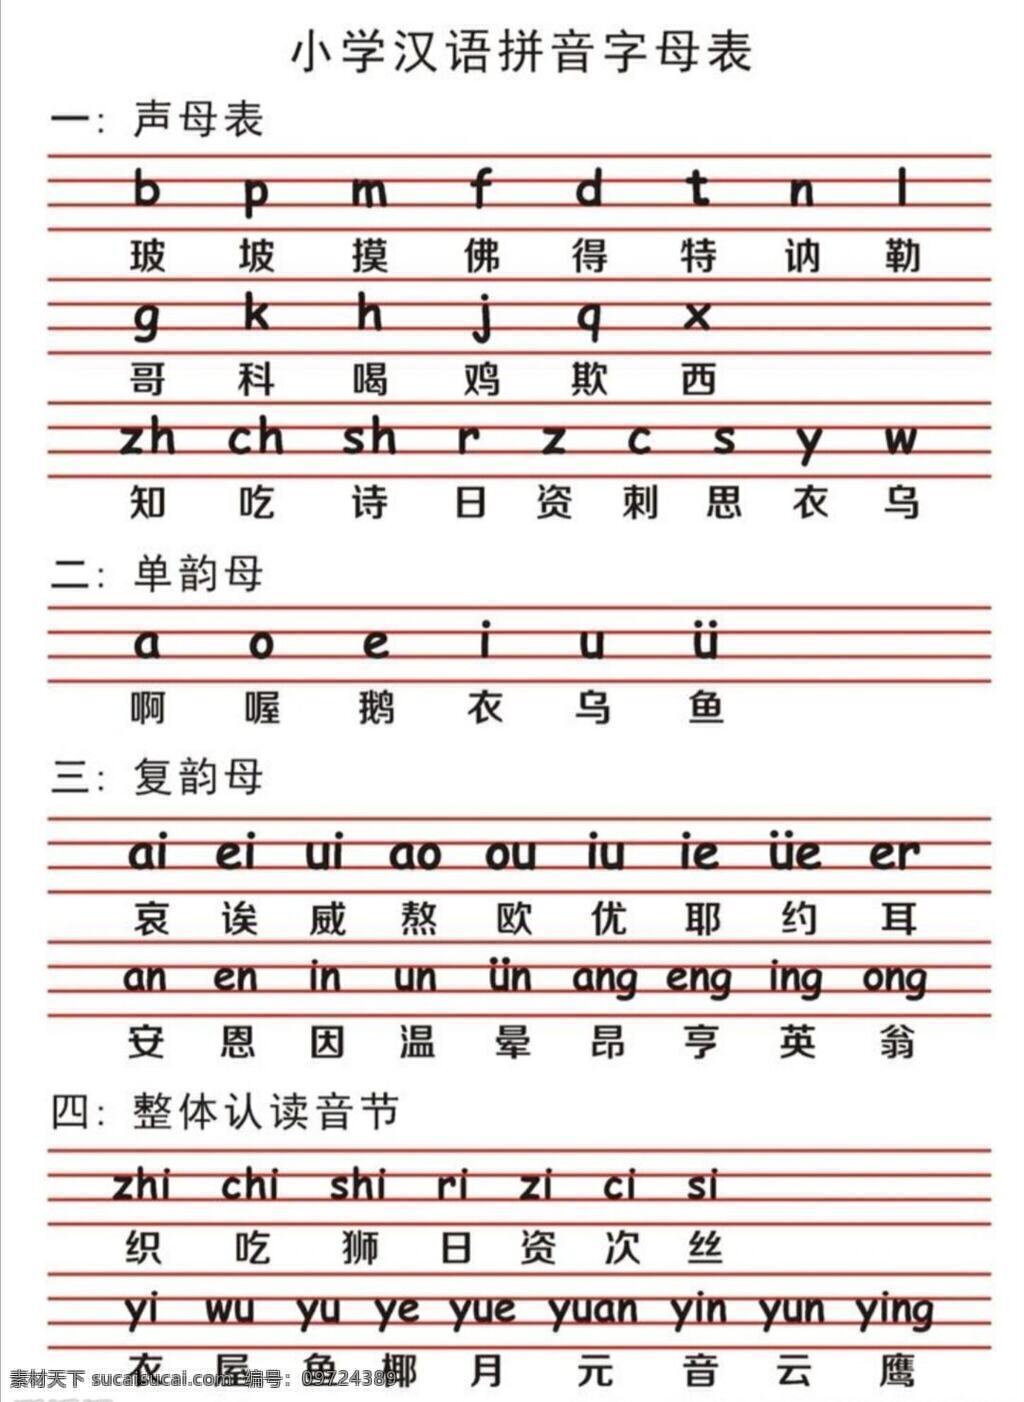 小学生 汉语 拼音字母 学习 表 拼音 字母 学习表 生活百科 学习办公